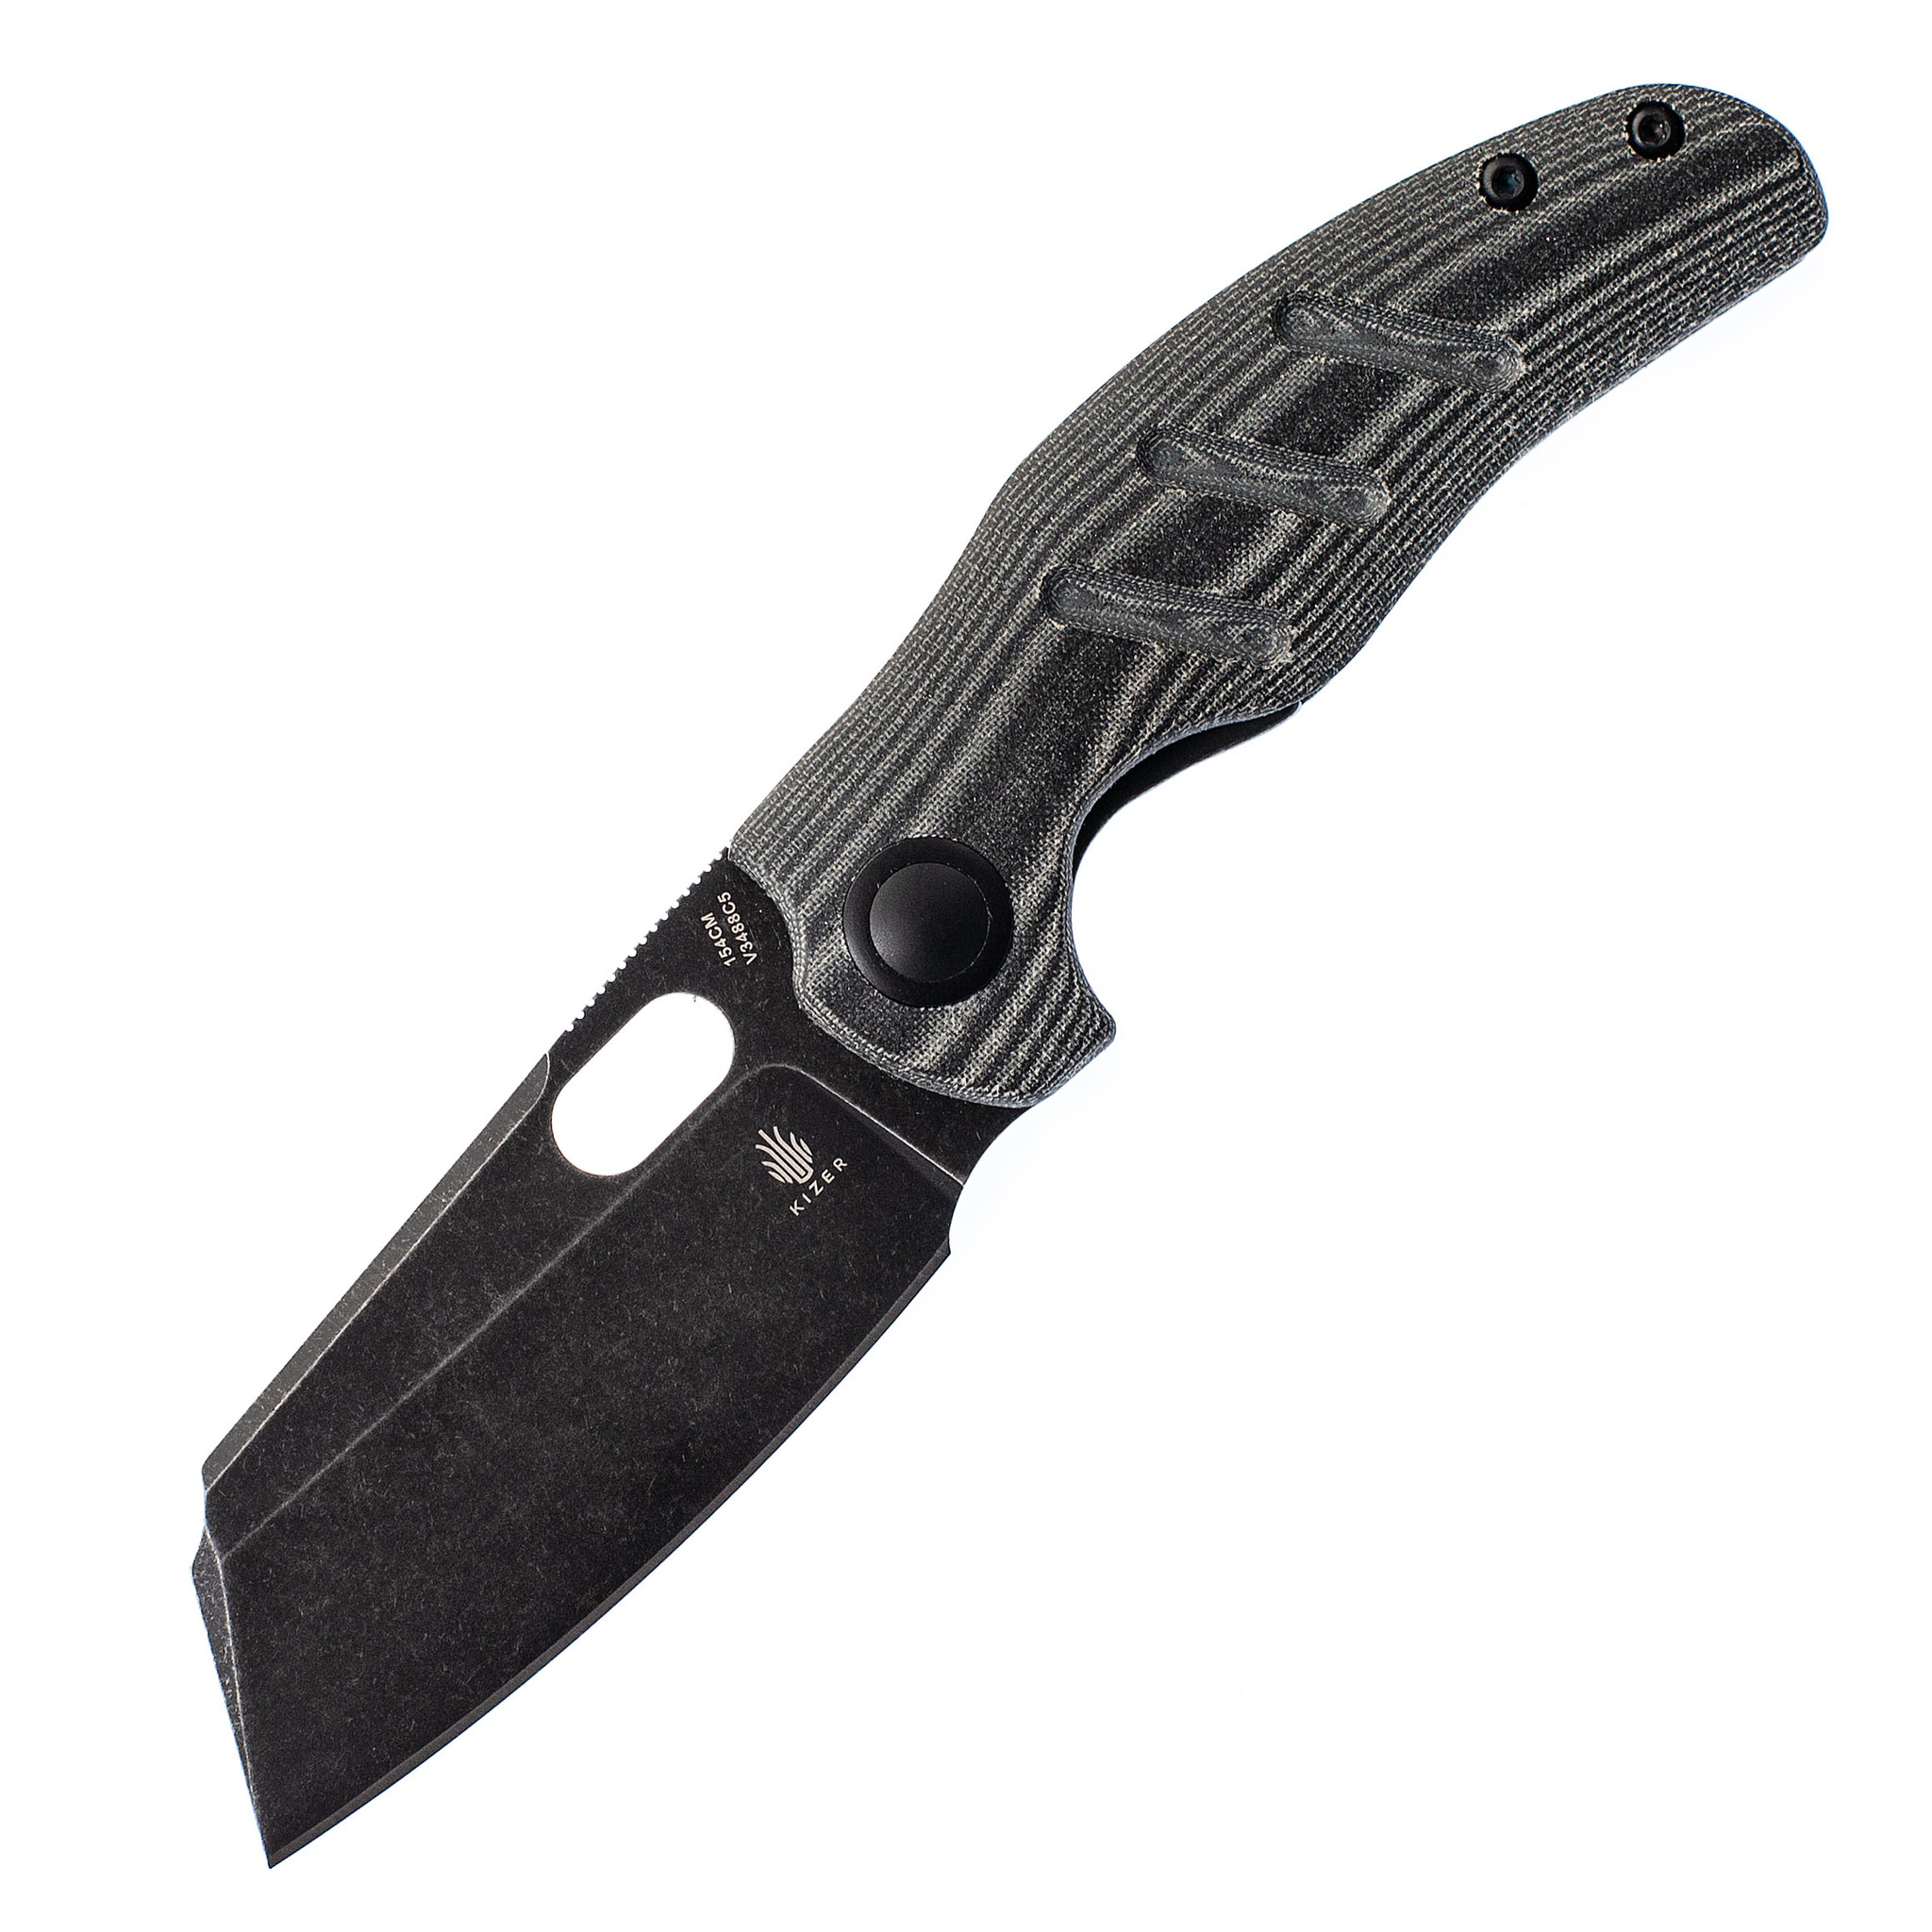 Складной нож Kizer C01C Black, сталь 154CM, рукоять микарта